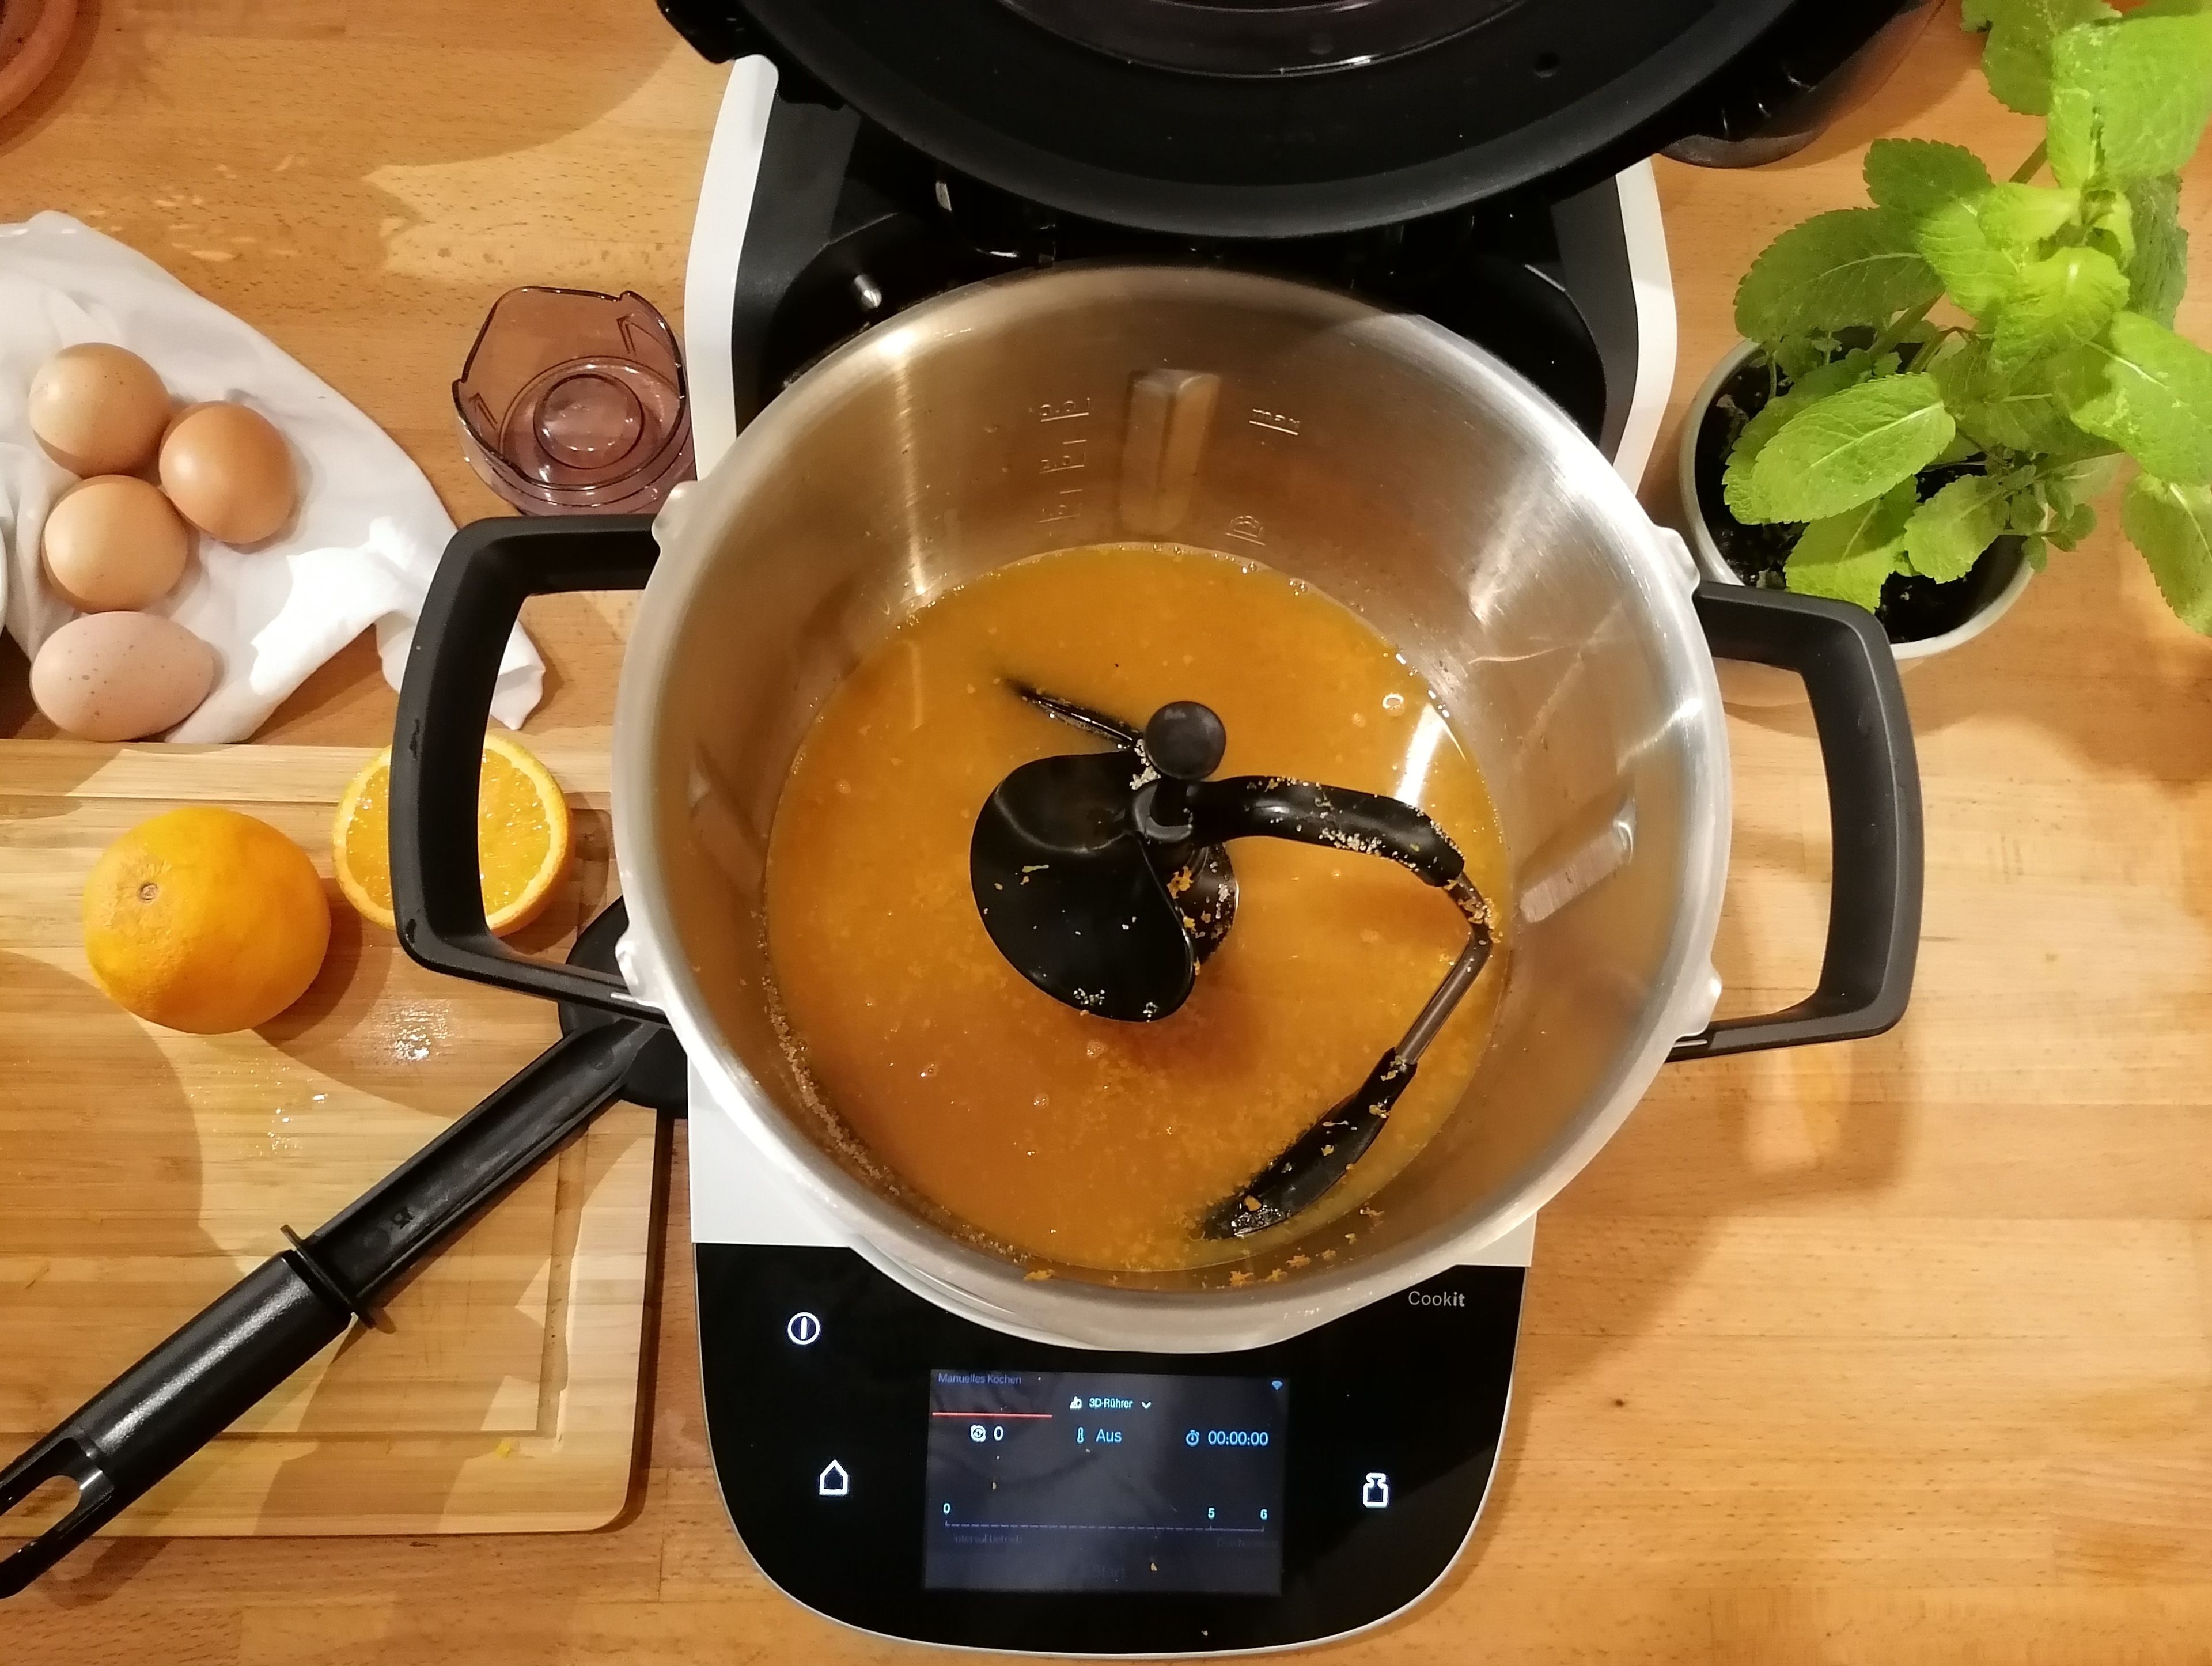 Für das Orangencurd den 3D-Rührer einsetzen. Die Schale der Orangen abreiben und mit Orangensaft und Zucker im Topf, bei geschlossenem Deckel und eingesetzten Messbecher, vermengen (3D-Rührer | Stufe 6 | 25 Sekunden). Die Speisestärke mit dem restlichen Orangensaft in einer seperaten Schüssel glatt rühren und gemeinsam mit den Eiern und der Butter in den Cookit geben. Alles bei geschlossenem Deckel ohne Messbecher erhitzen (3D-Rührer | Stufe 5 | 96°C | 25 Minuten). 
Wenn das Orangencurd fertig ist, in eine Schüssel geben und den Cookit säubern.